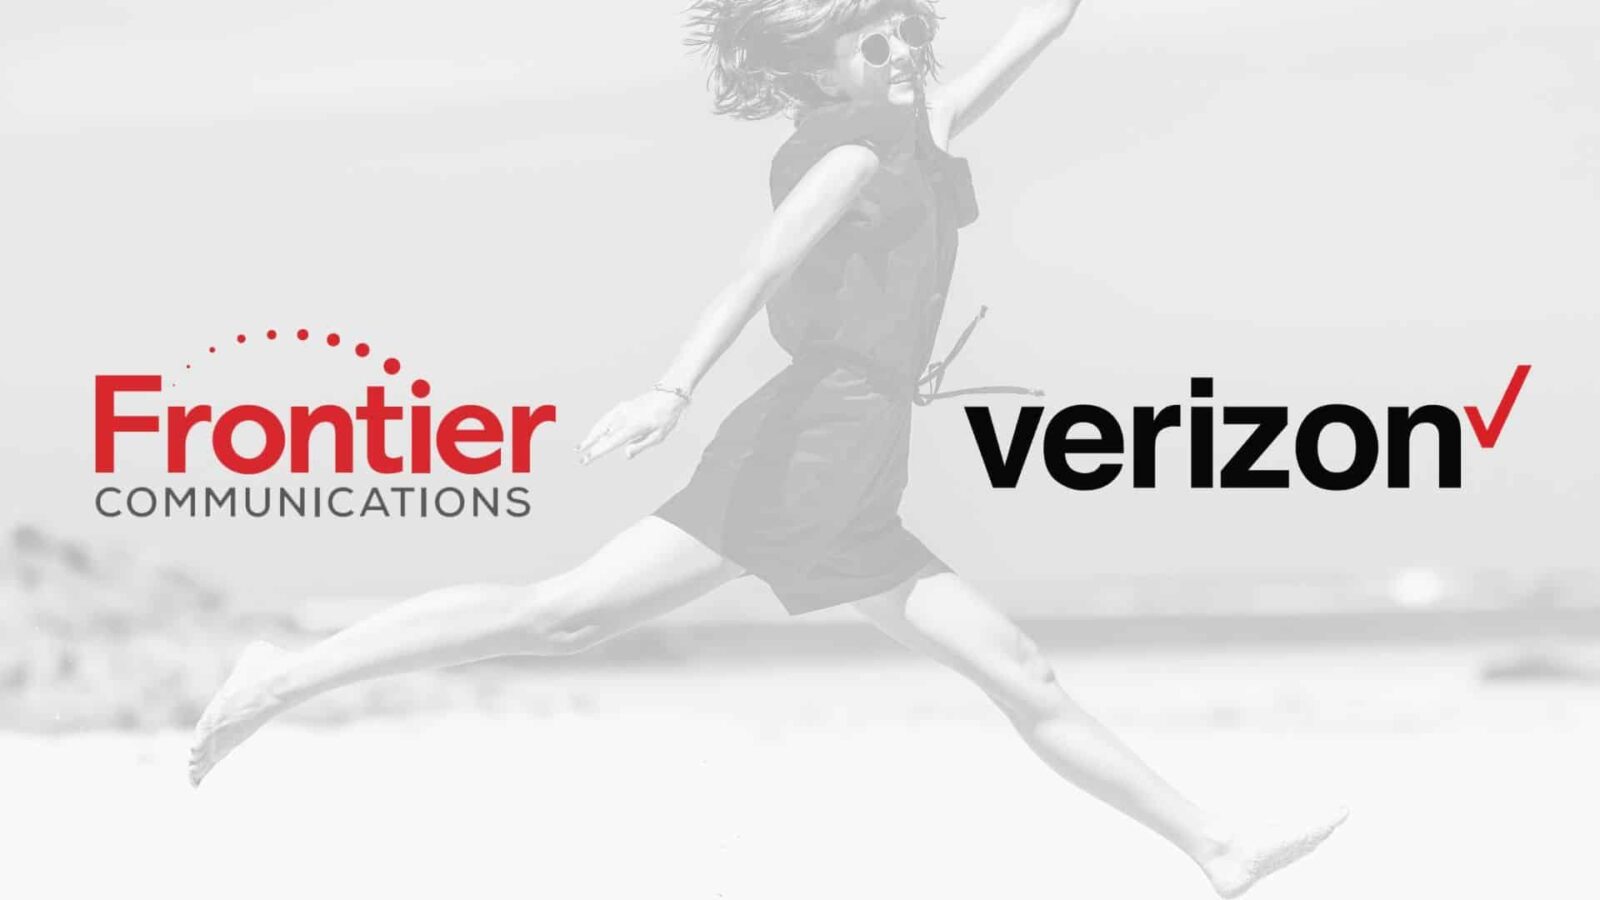 Frontier Vs Verizon Comparing Internet Providers